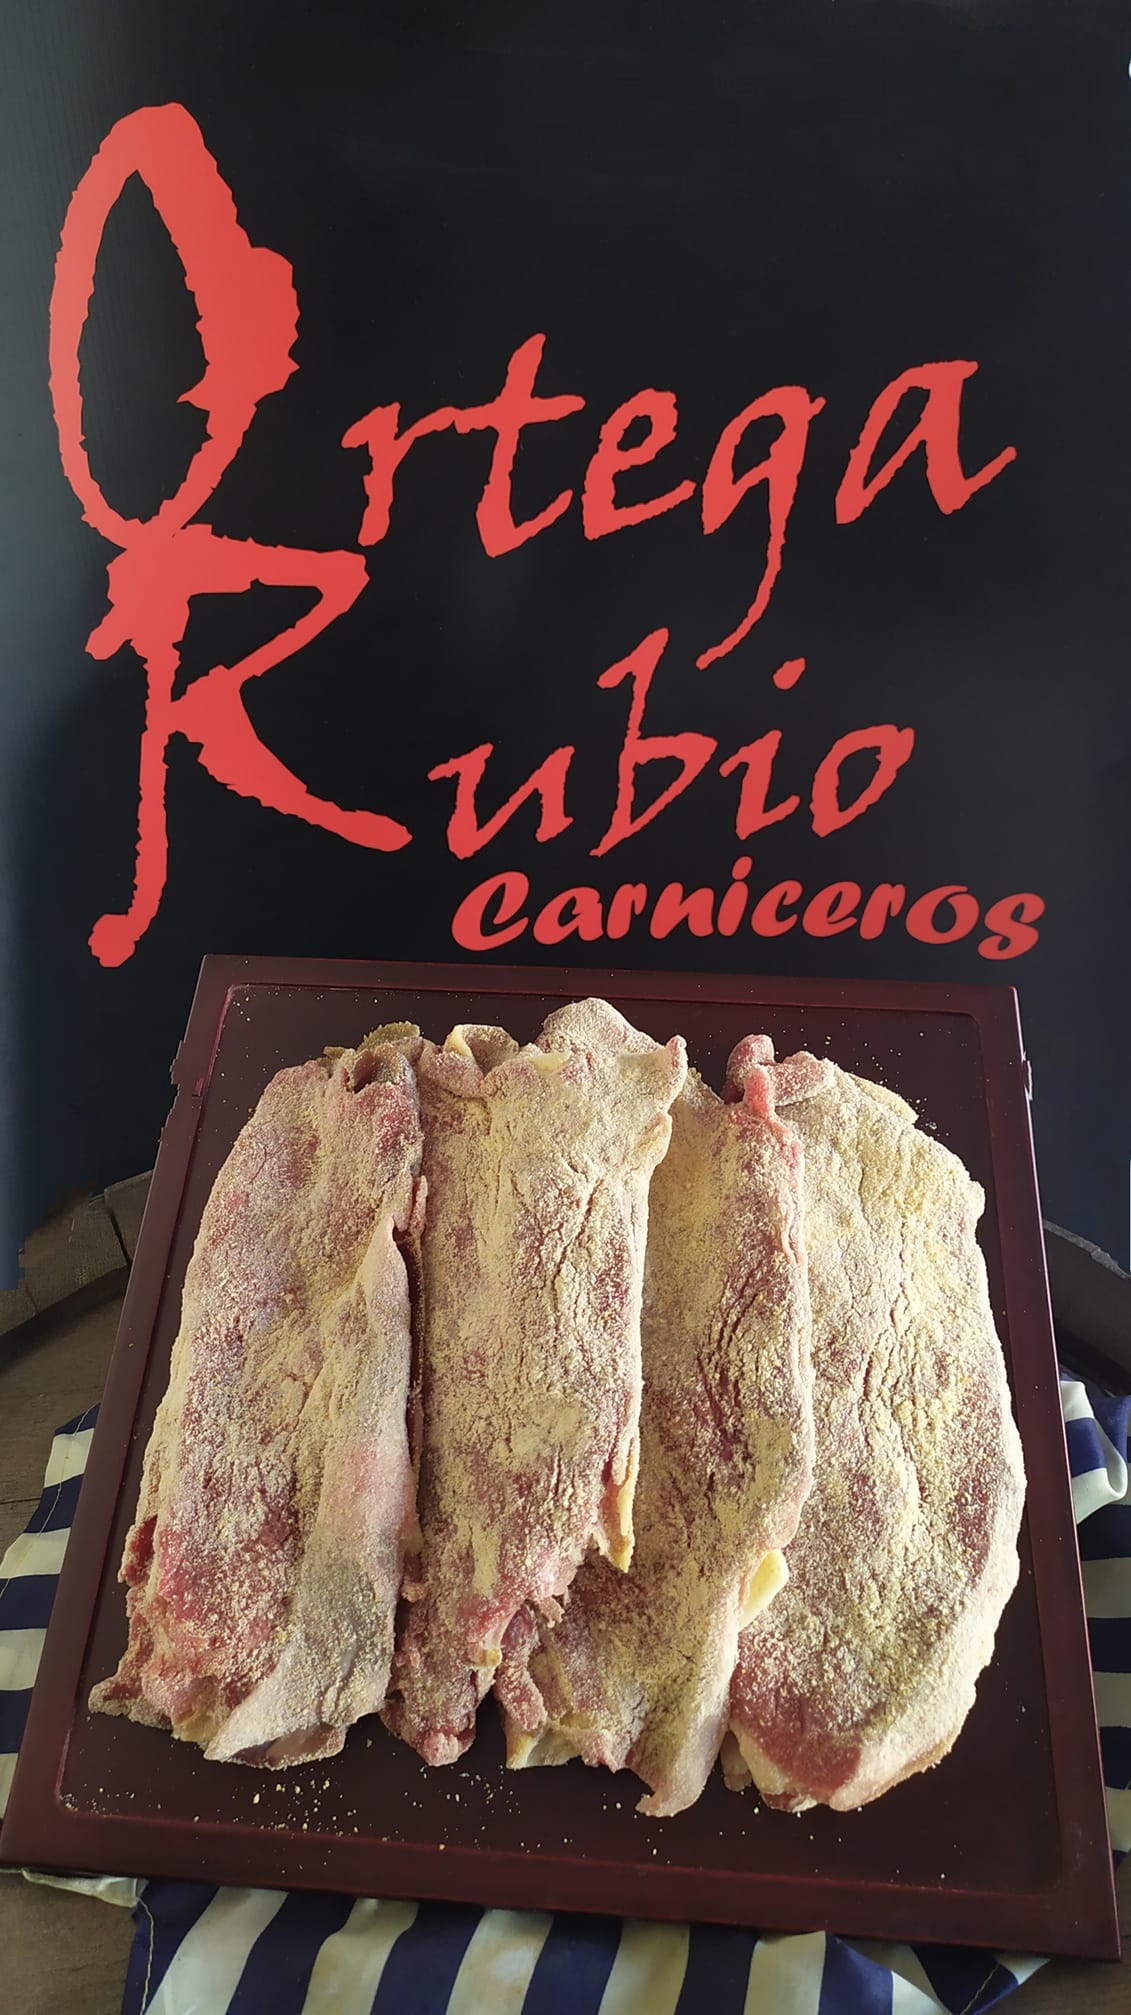 Productos extremeños Carnicería en Trujillo Ortega Rubio